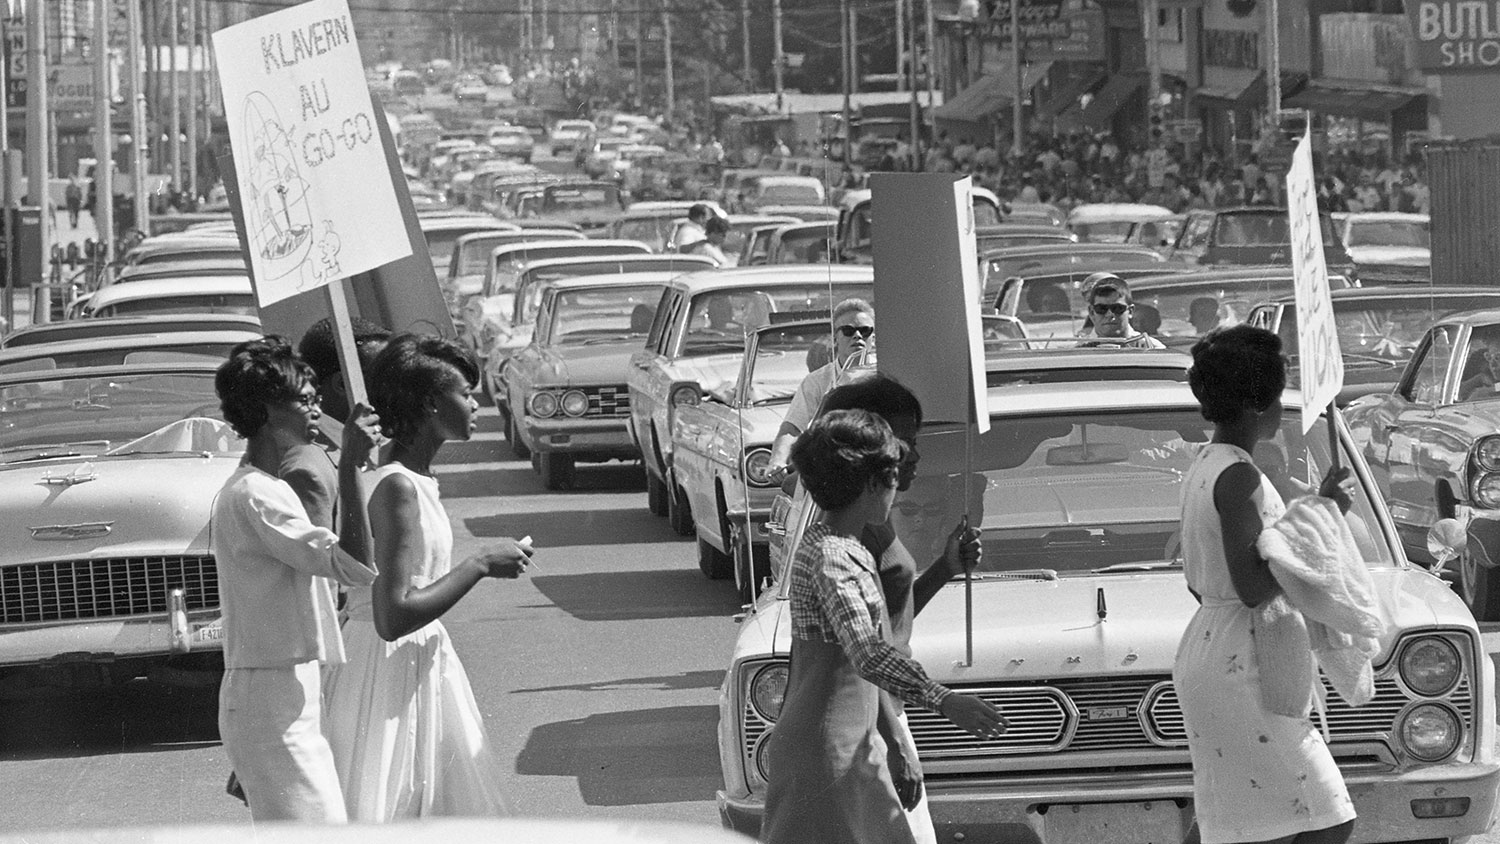 一名抗议者穿过街道，在这张六十年代的黑白照片中，他举着一个牌子。